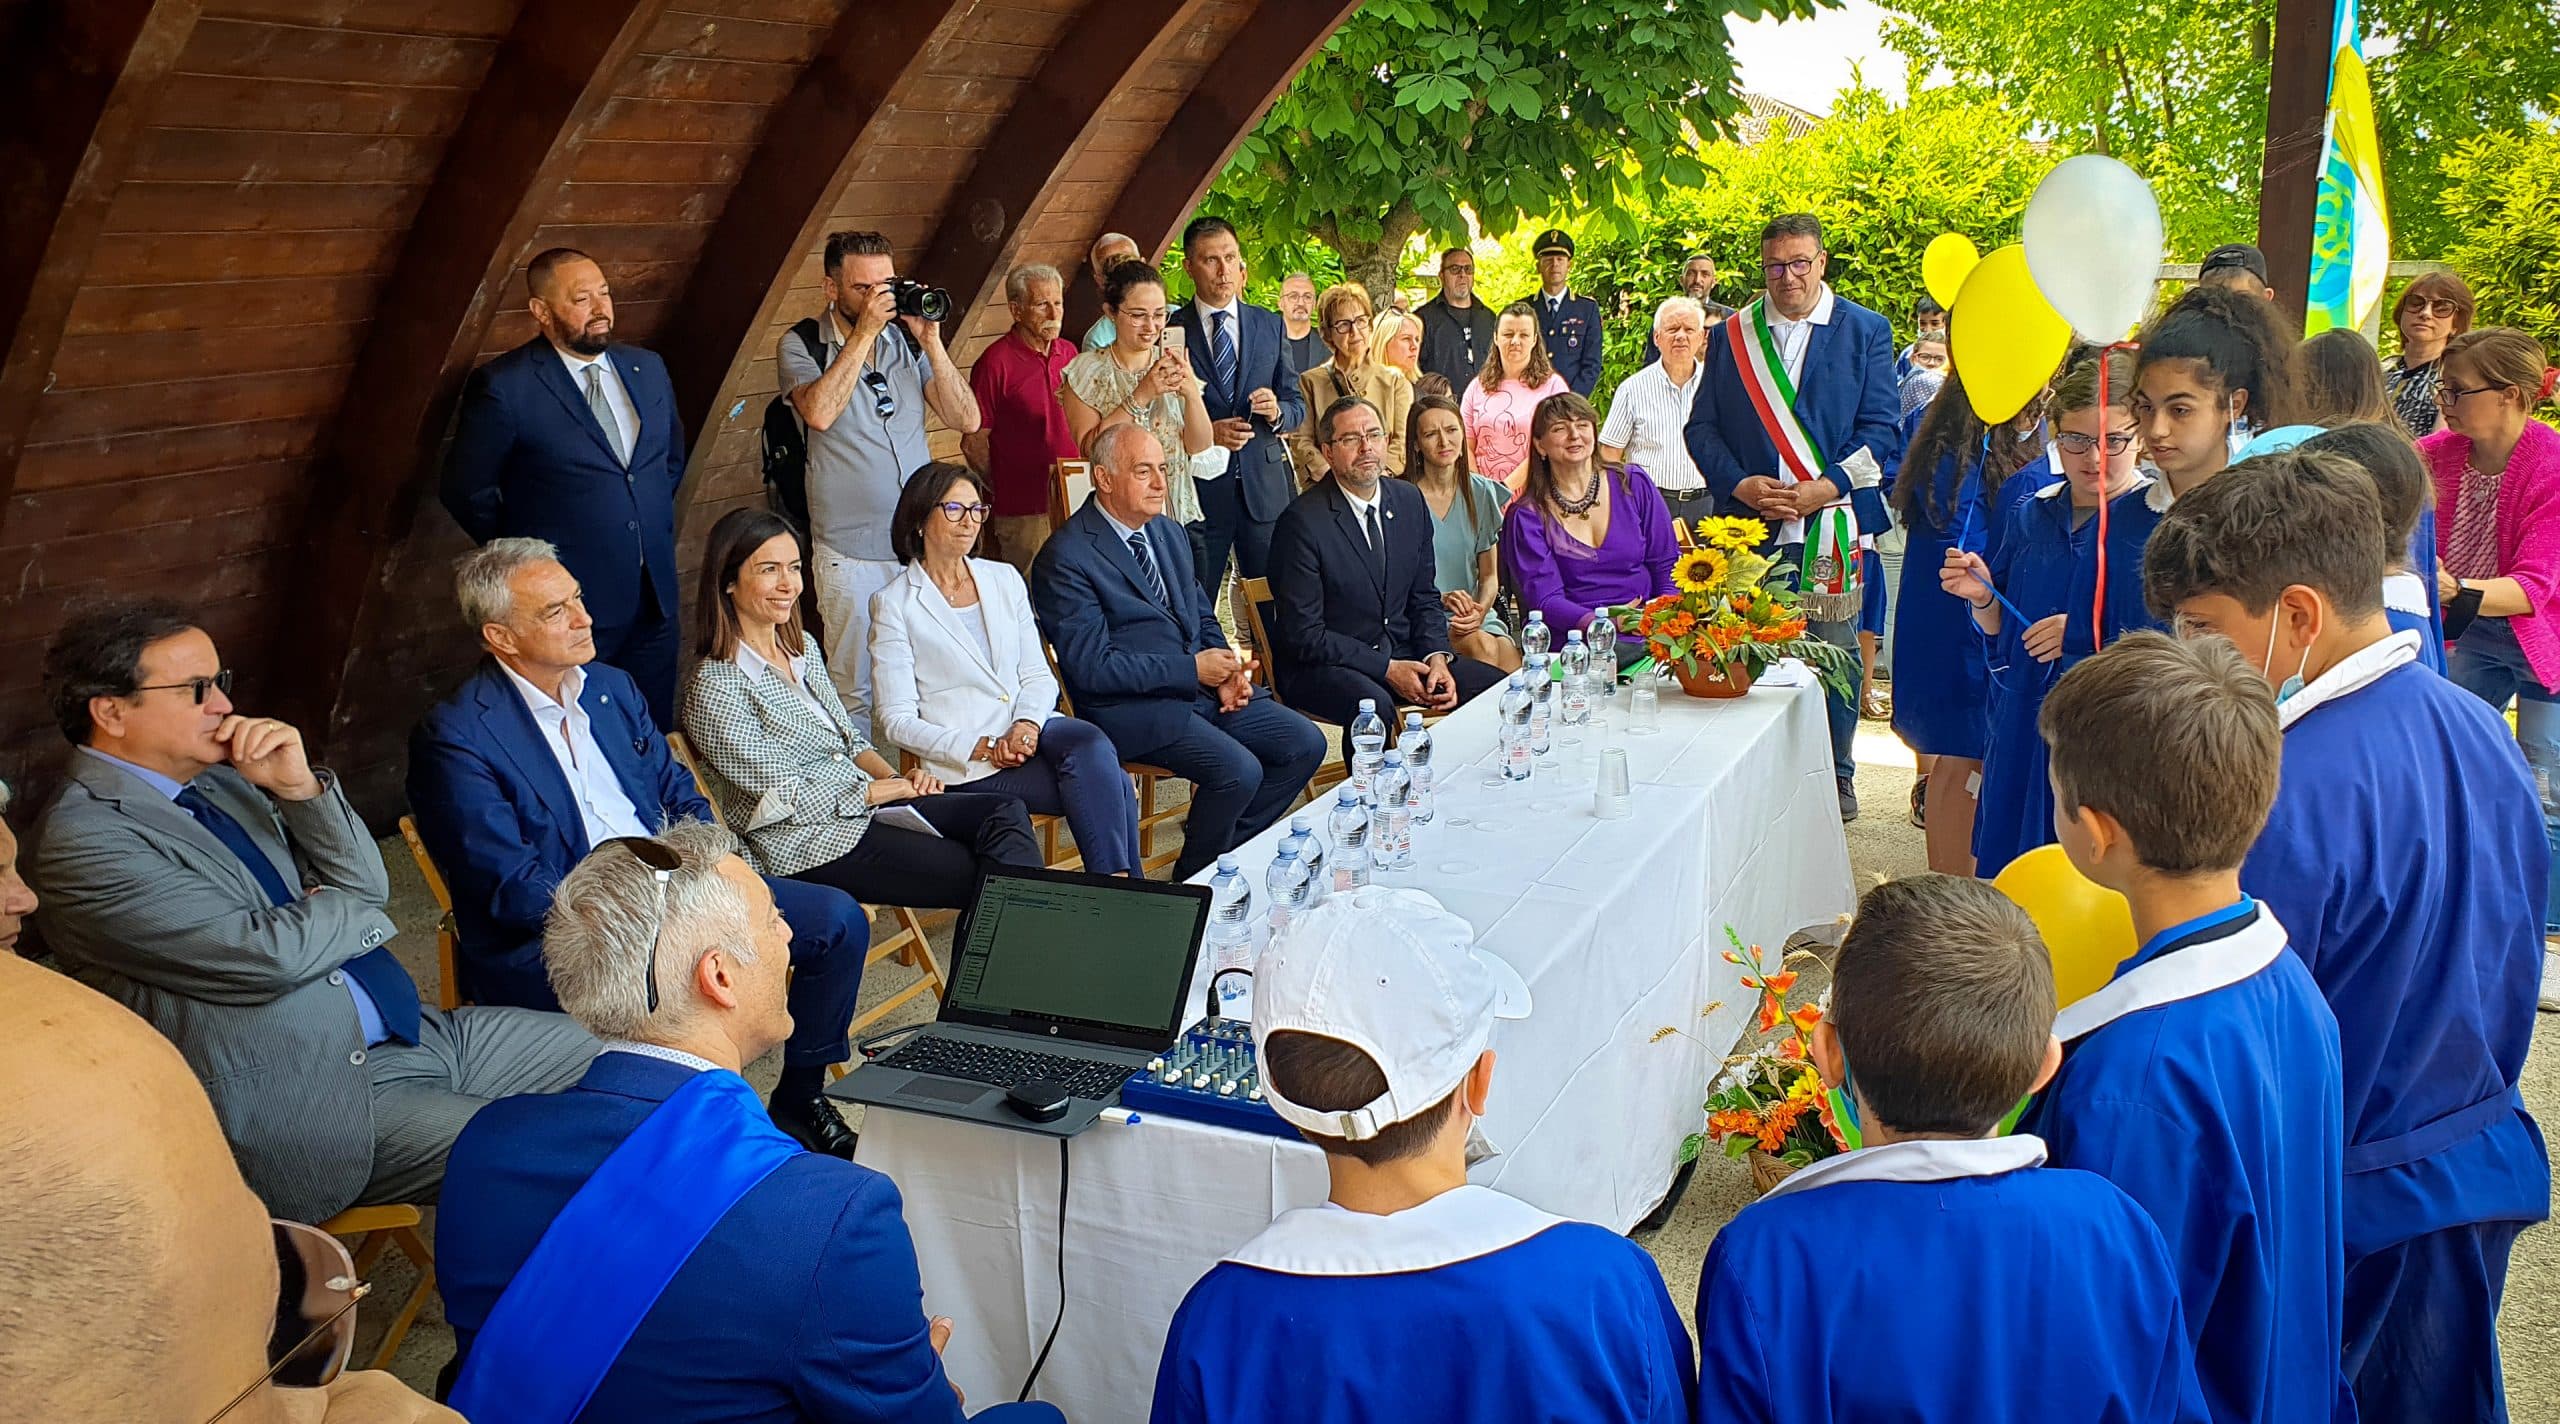 Il comune di Cerchio al centro della diplomazia internazionale, l’Ambasciatore ucraino in Vaticano e il Ministro Carfagna accolti da Tedeschi